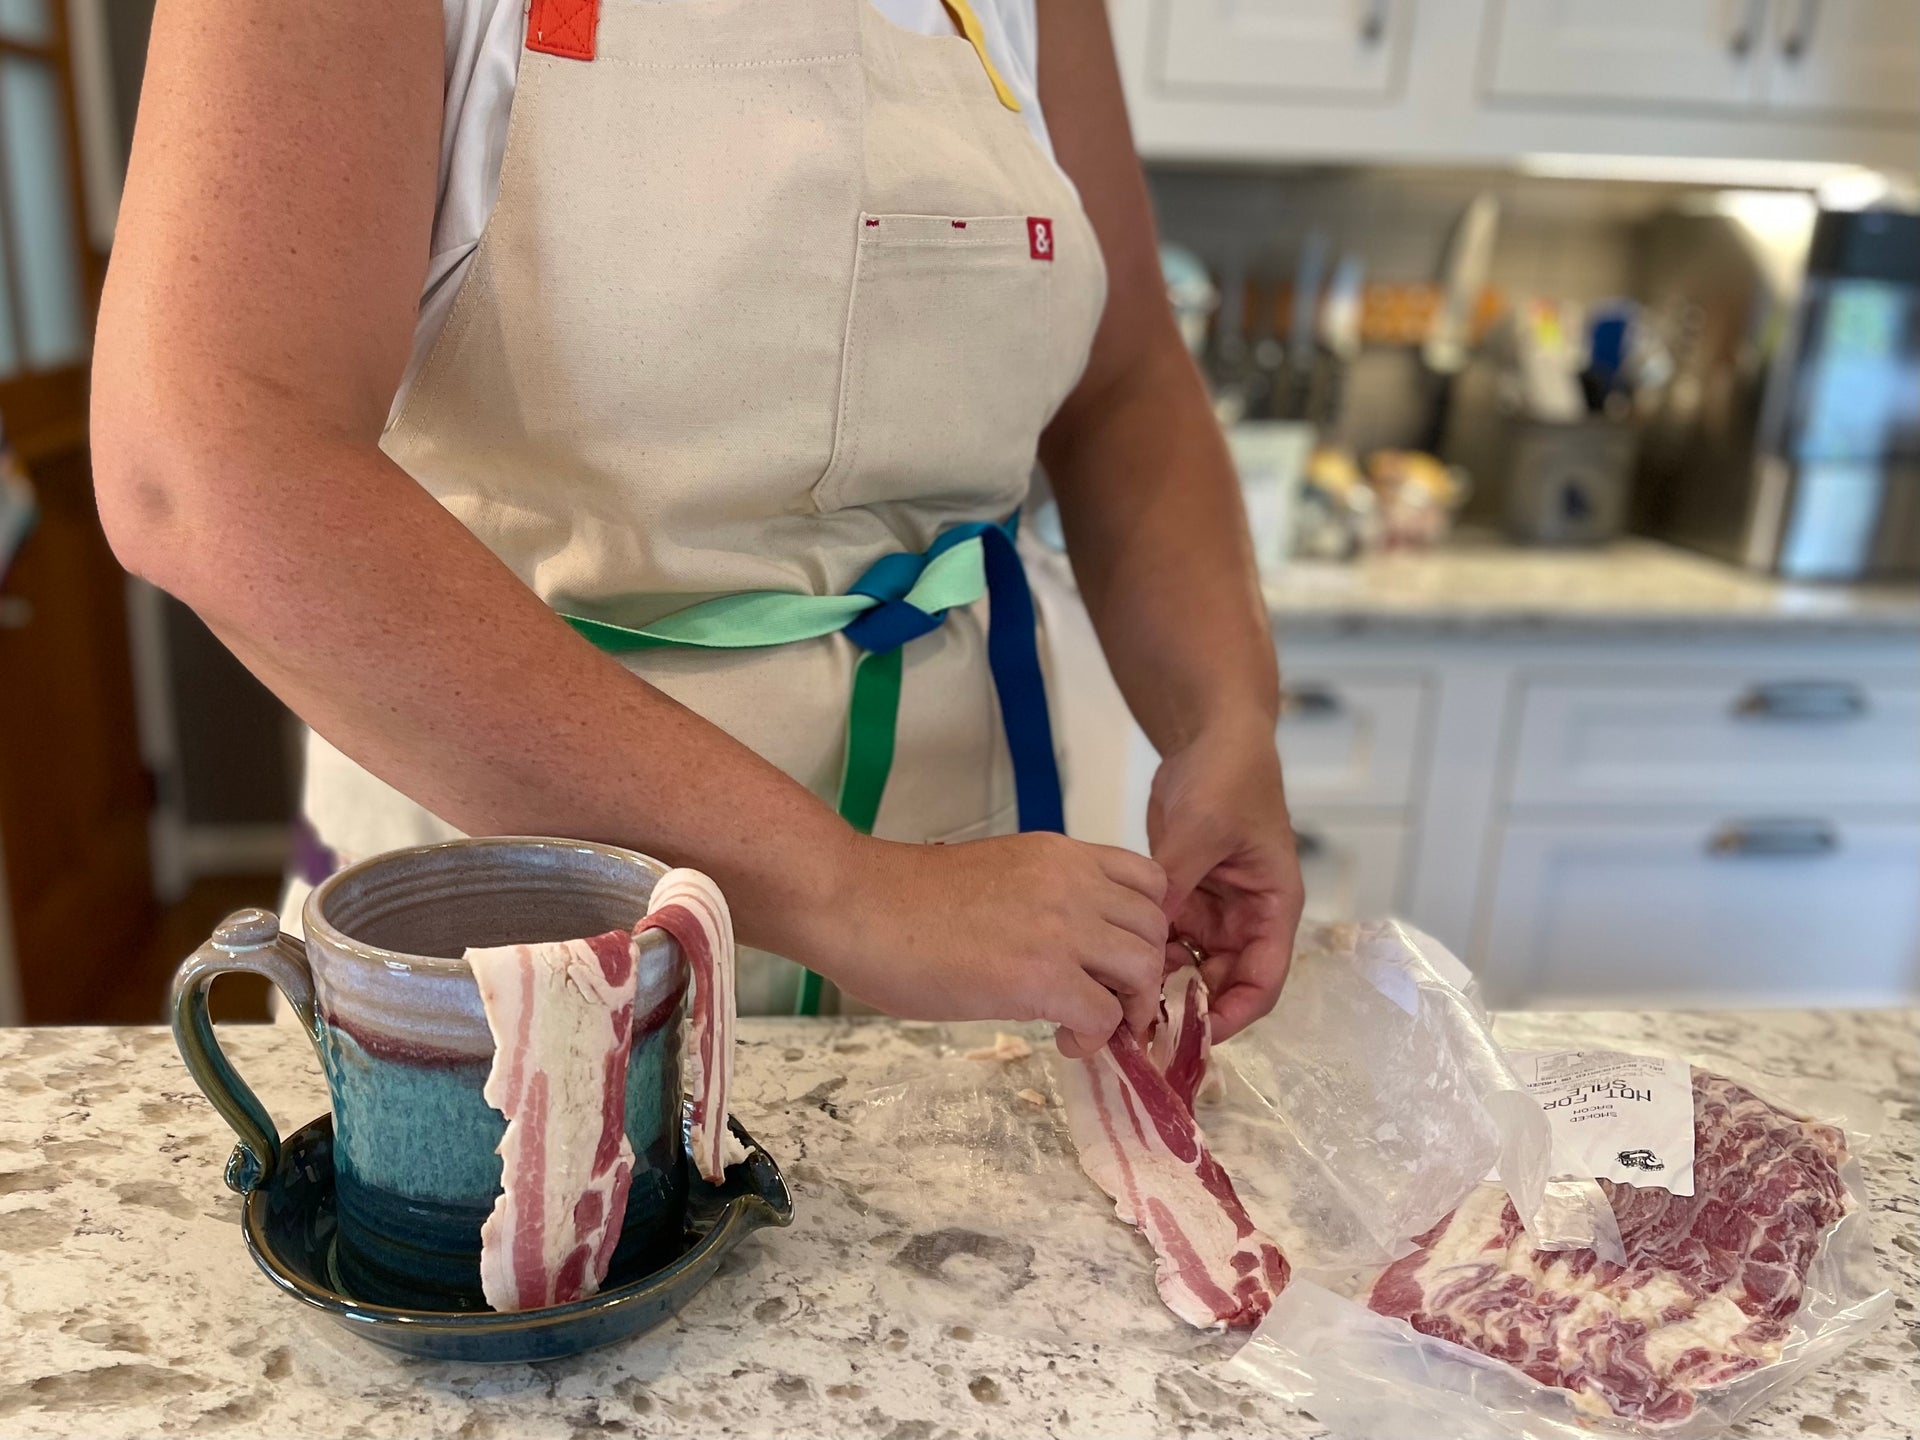 Field Test | What’s Shakin’ Bacon?